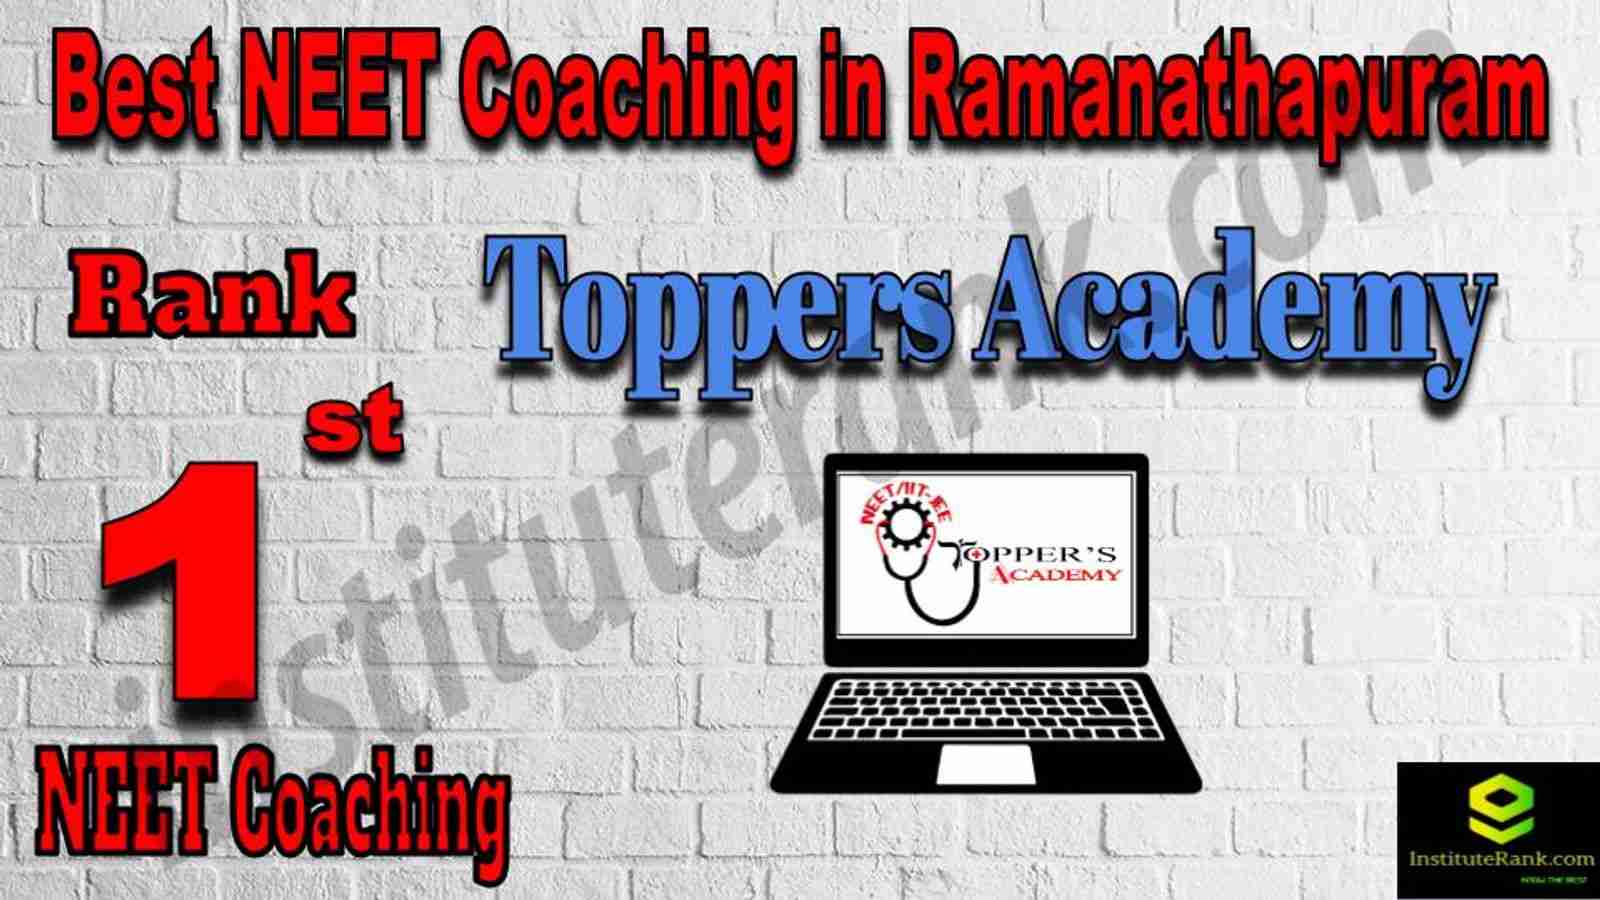 1st Best NEET Coaching in Ramanathapuram